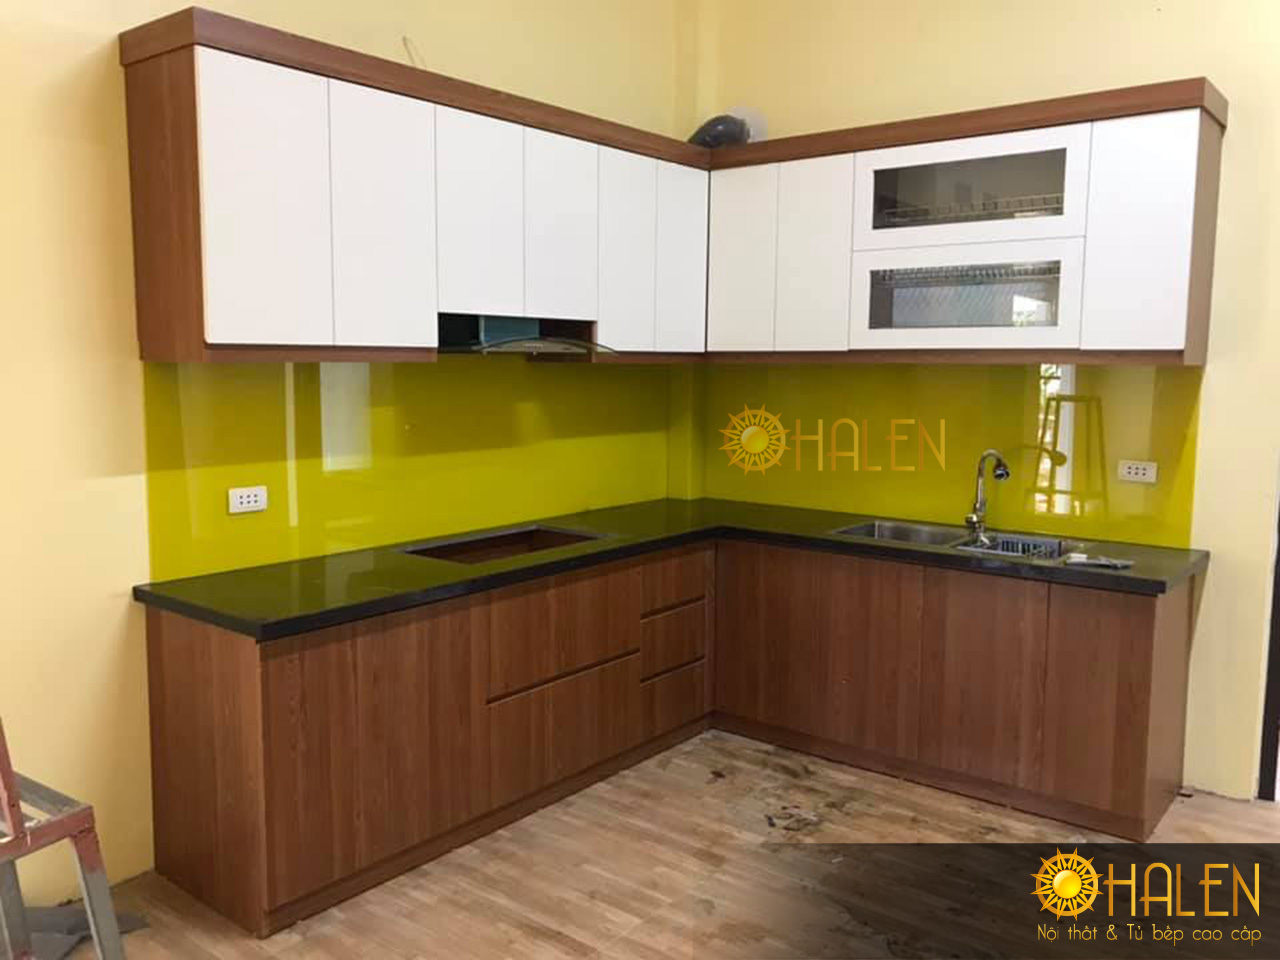 Tủ bếp Melamine màu cánh gián kết hợp kính bếp màu vàng mang không đến không gian bếp hiện đại trẻ trung và ấm cúng